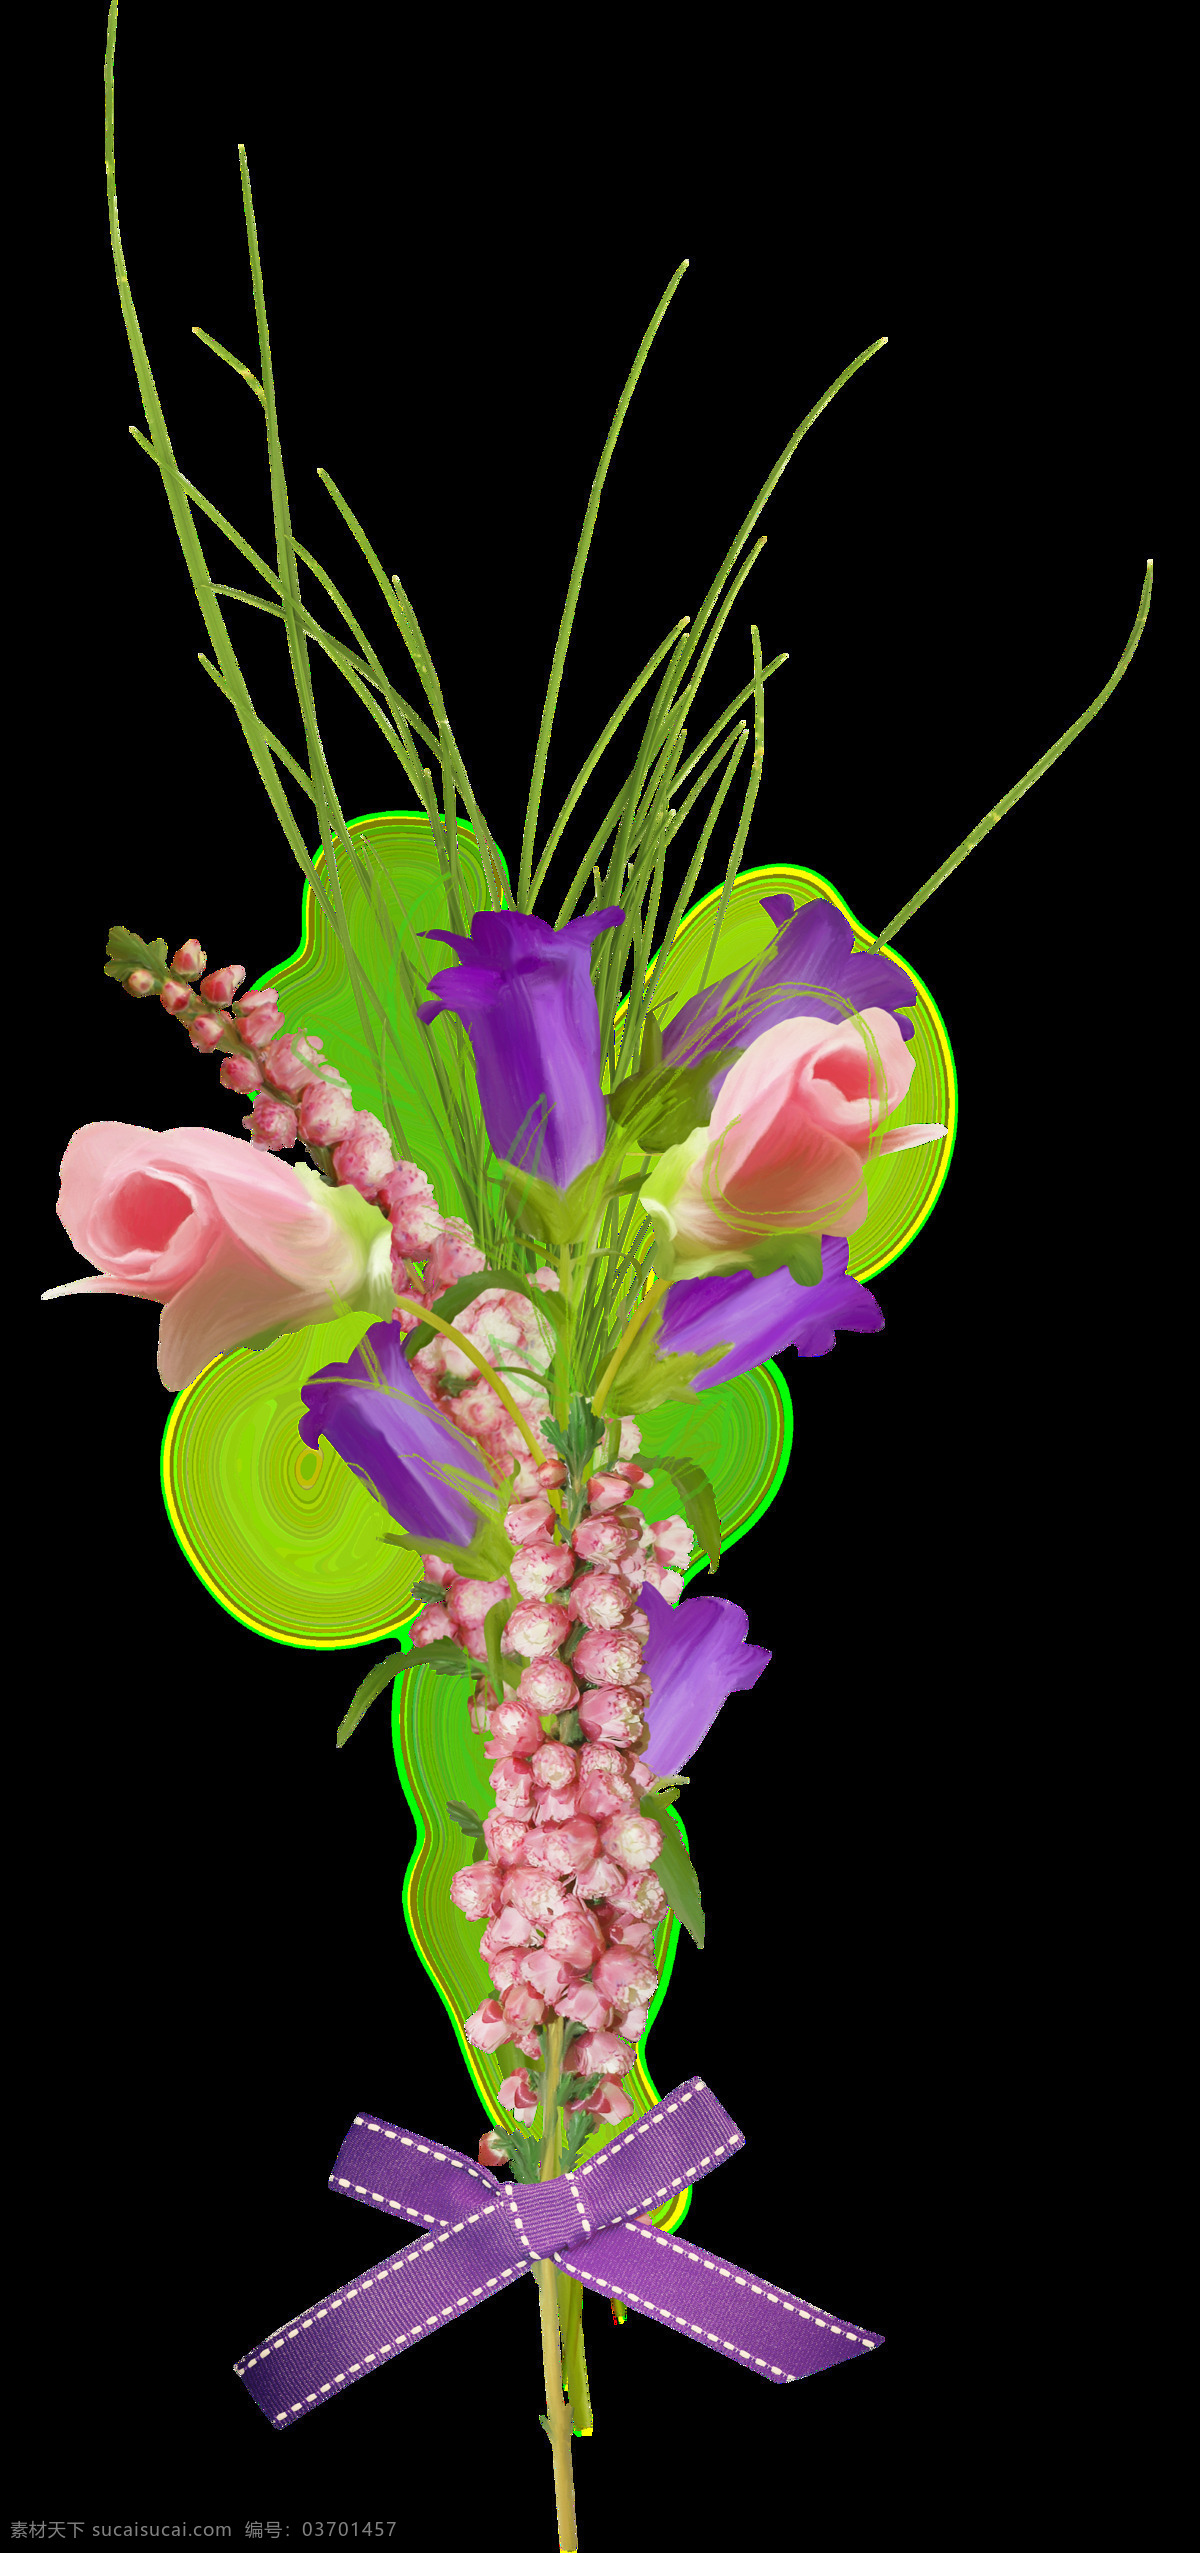 简约 现代感 束 鲜花 透明 紫色 粉红色 蝴蝶结 藤蔓 透明素材 免扣素材 装饰图片